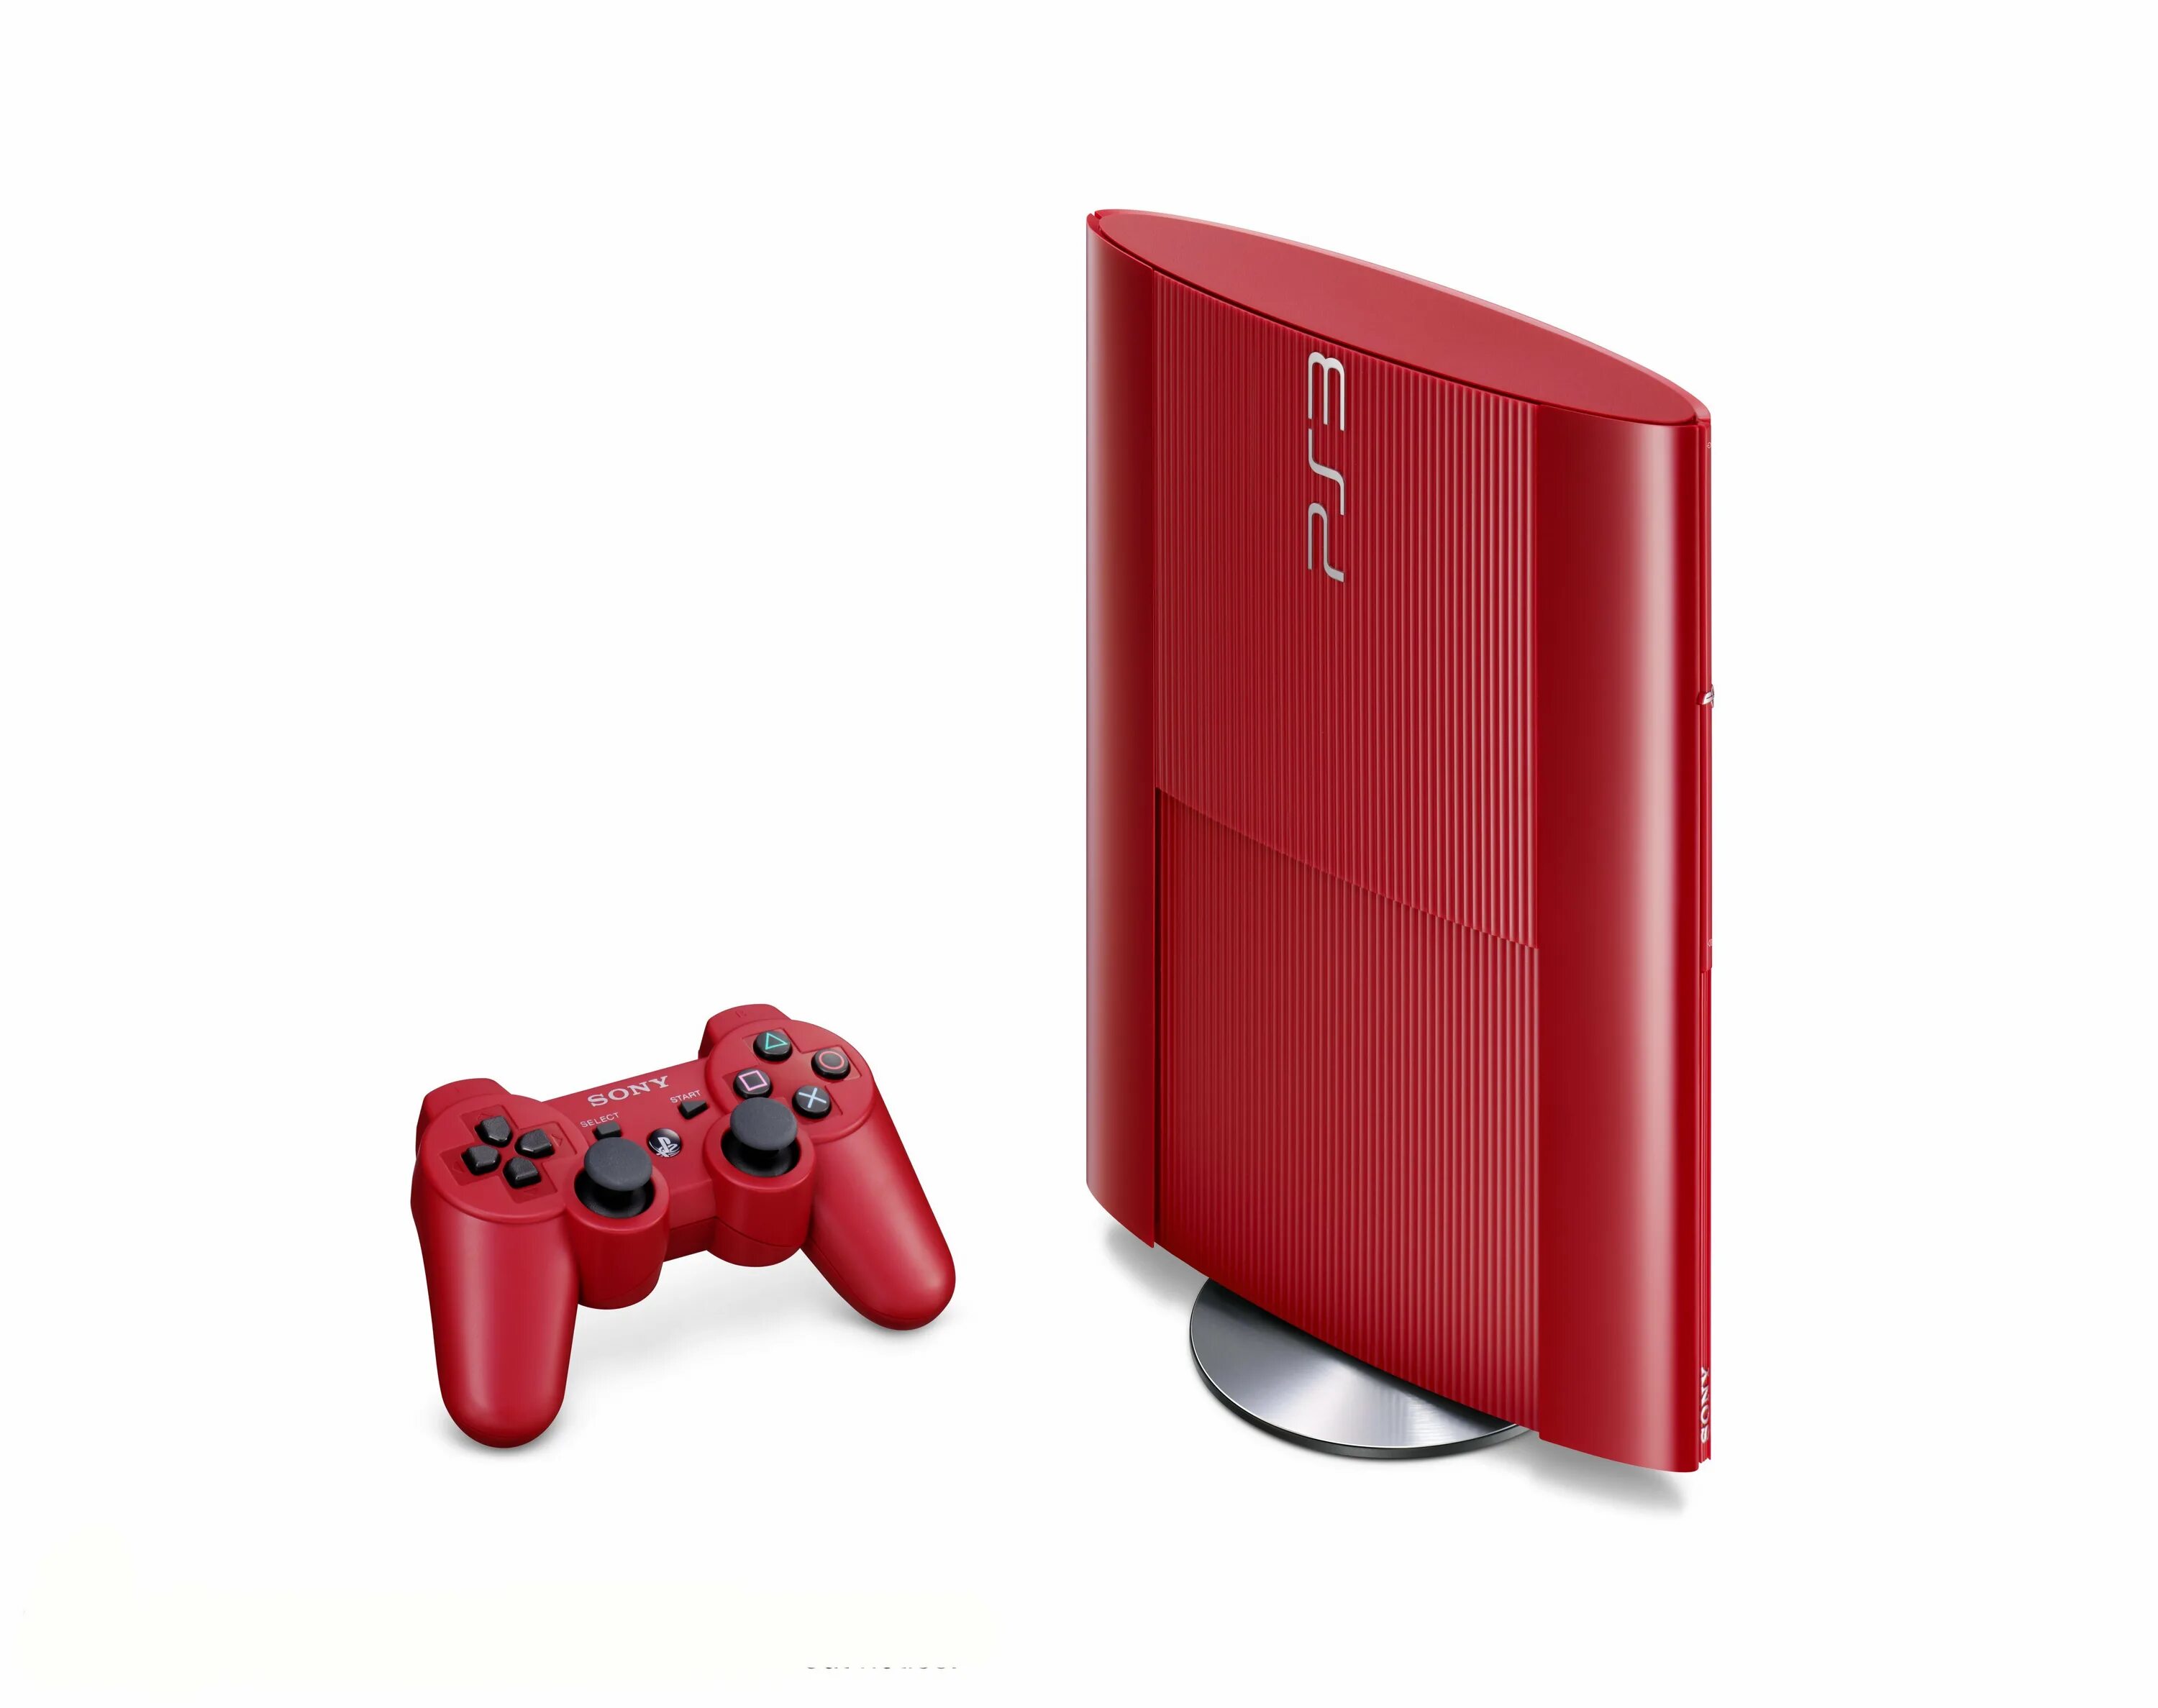 Ps3 super Slim 500gb. Ps3 super Slim Red. Ps3 super Slim 500gb Red. PLAYSTATION 3 super Slim 500gb. Ps3 2013